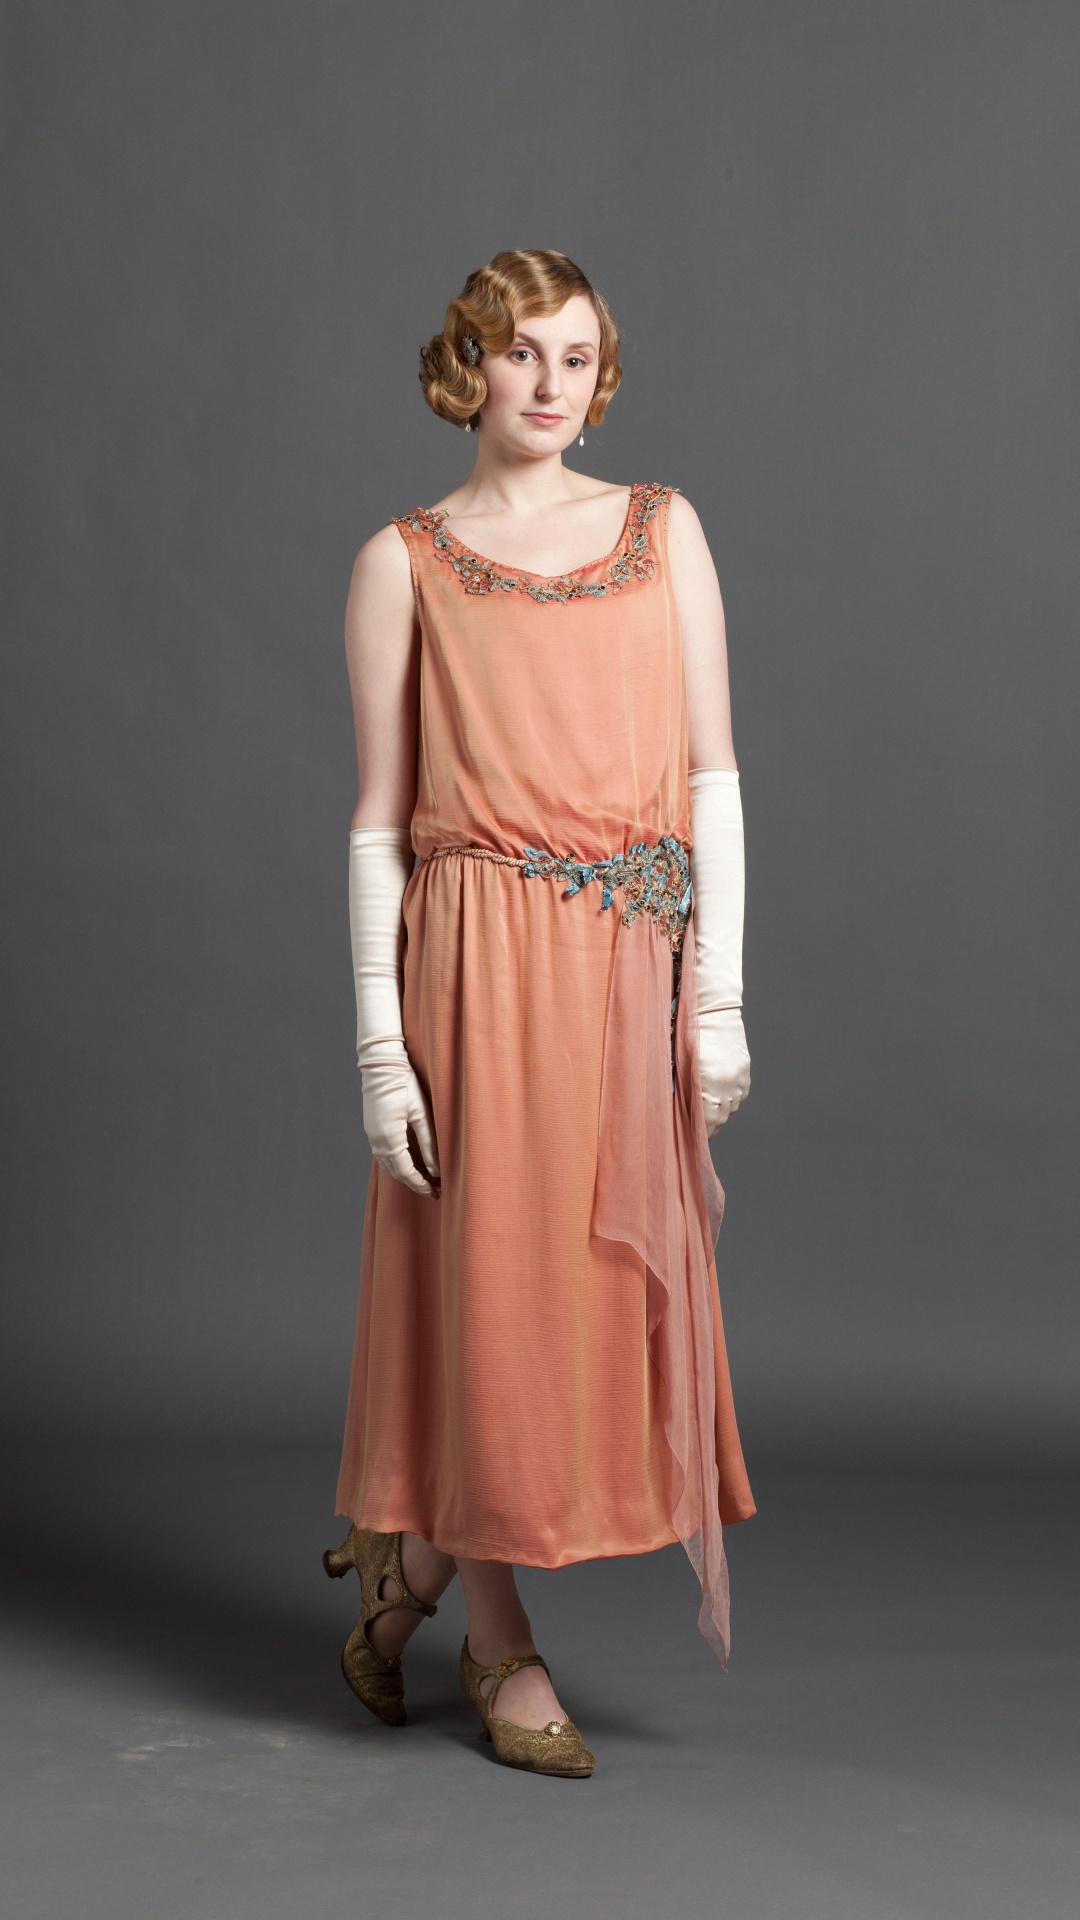 Downton Abbey, Vêtement, Modèle de Mode, Robe de Jour, Mode. Wallpaper in 1080x1920 Resolution